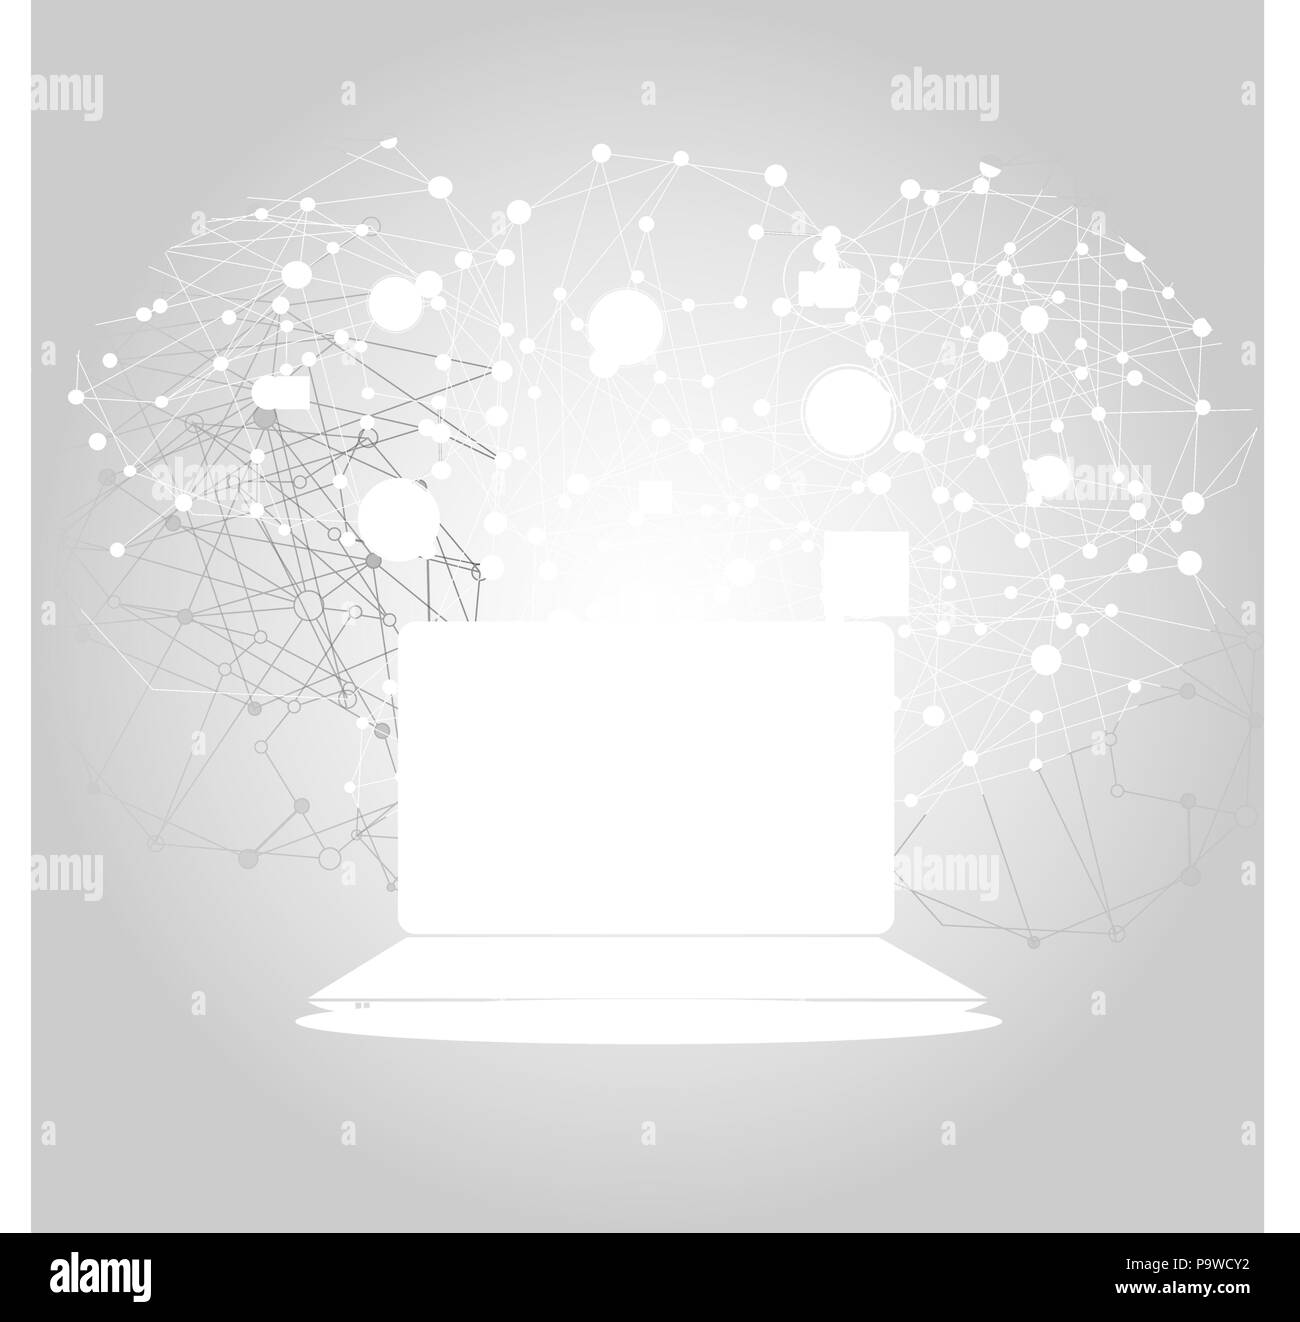 Collegamenti astratti e di protezione dei dati personali Concept Design con computer laptop e dispositivi mobili wireless, trasparente mesh geometriche - Illustrazione in formato vettoriale modificabile Illustrazione Vettoriale